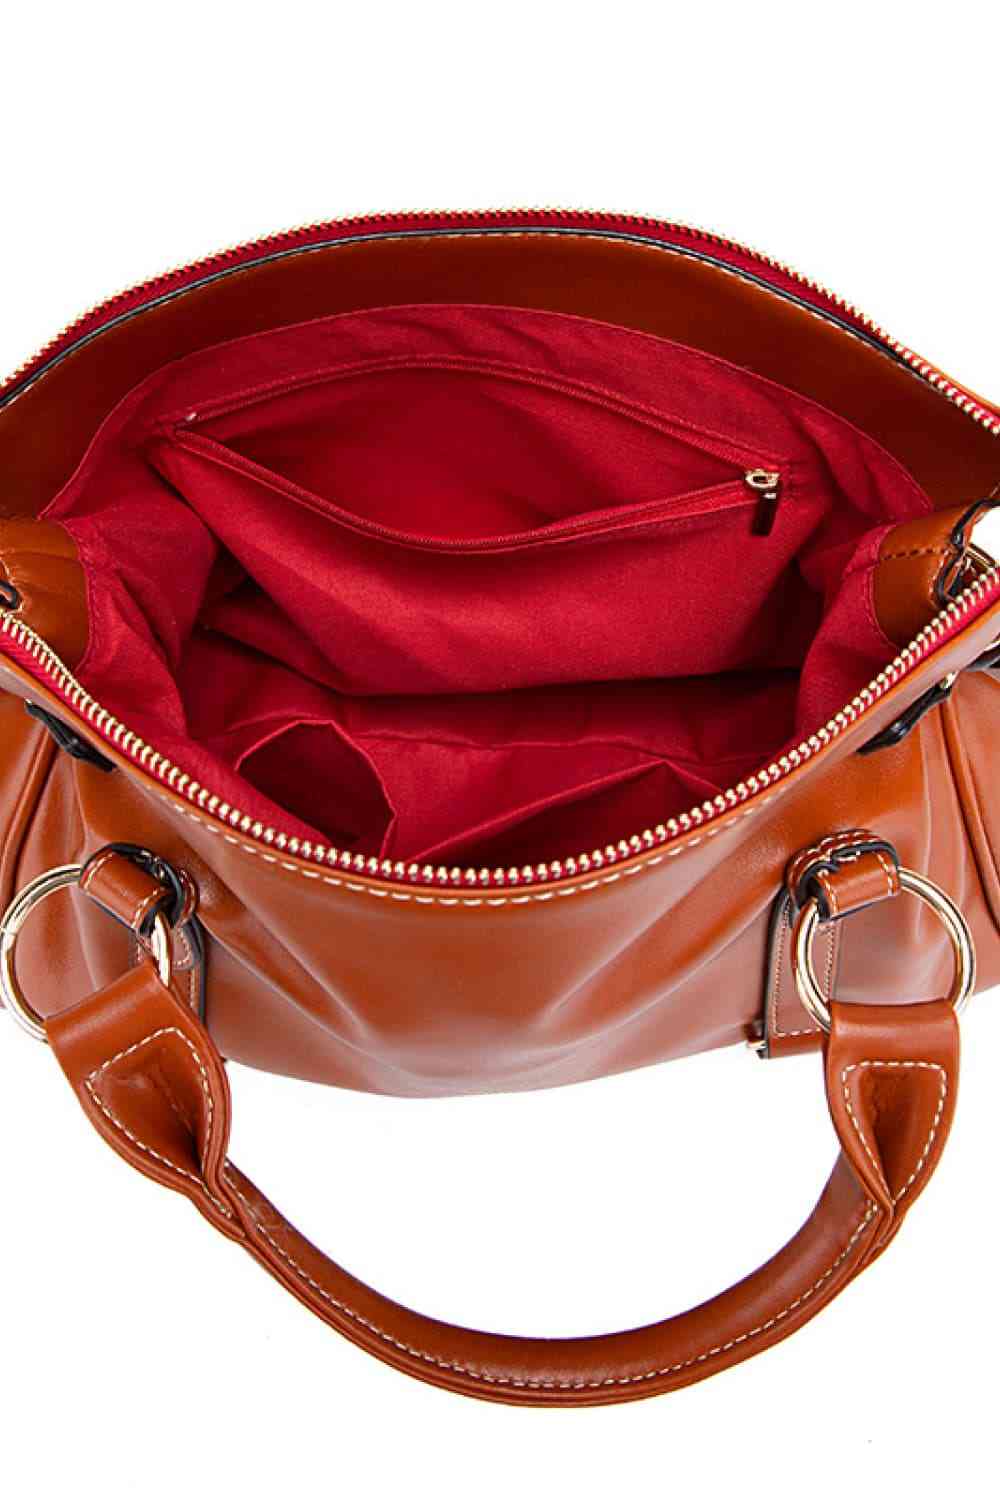 TEEK - PU Leather Handbag with Tassels BAG TEEK Trend   